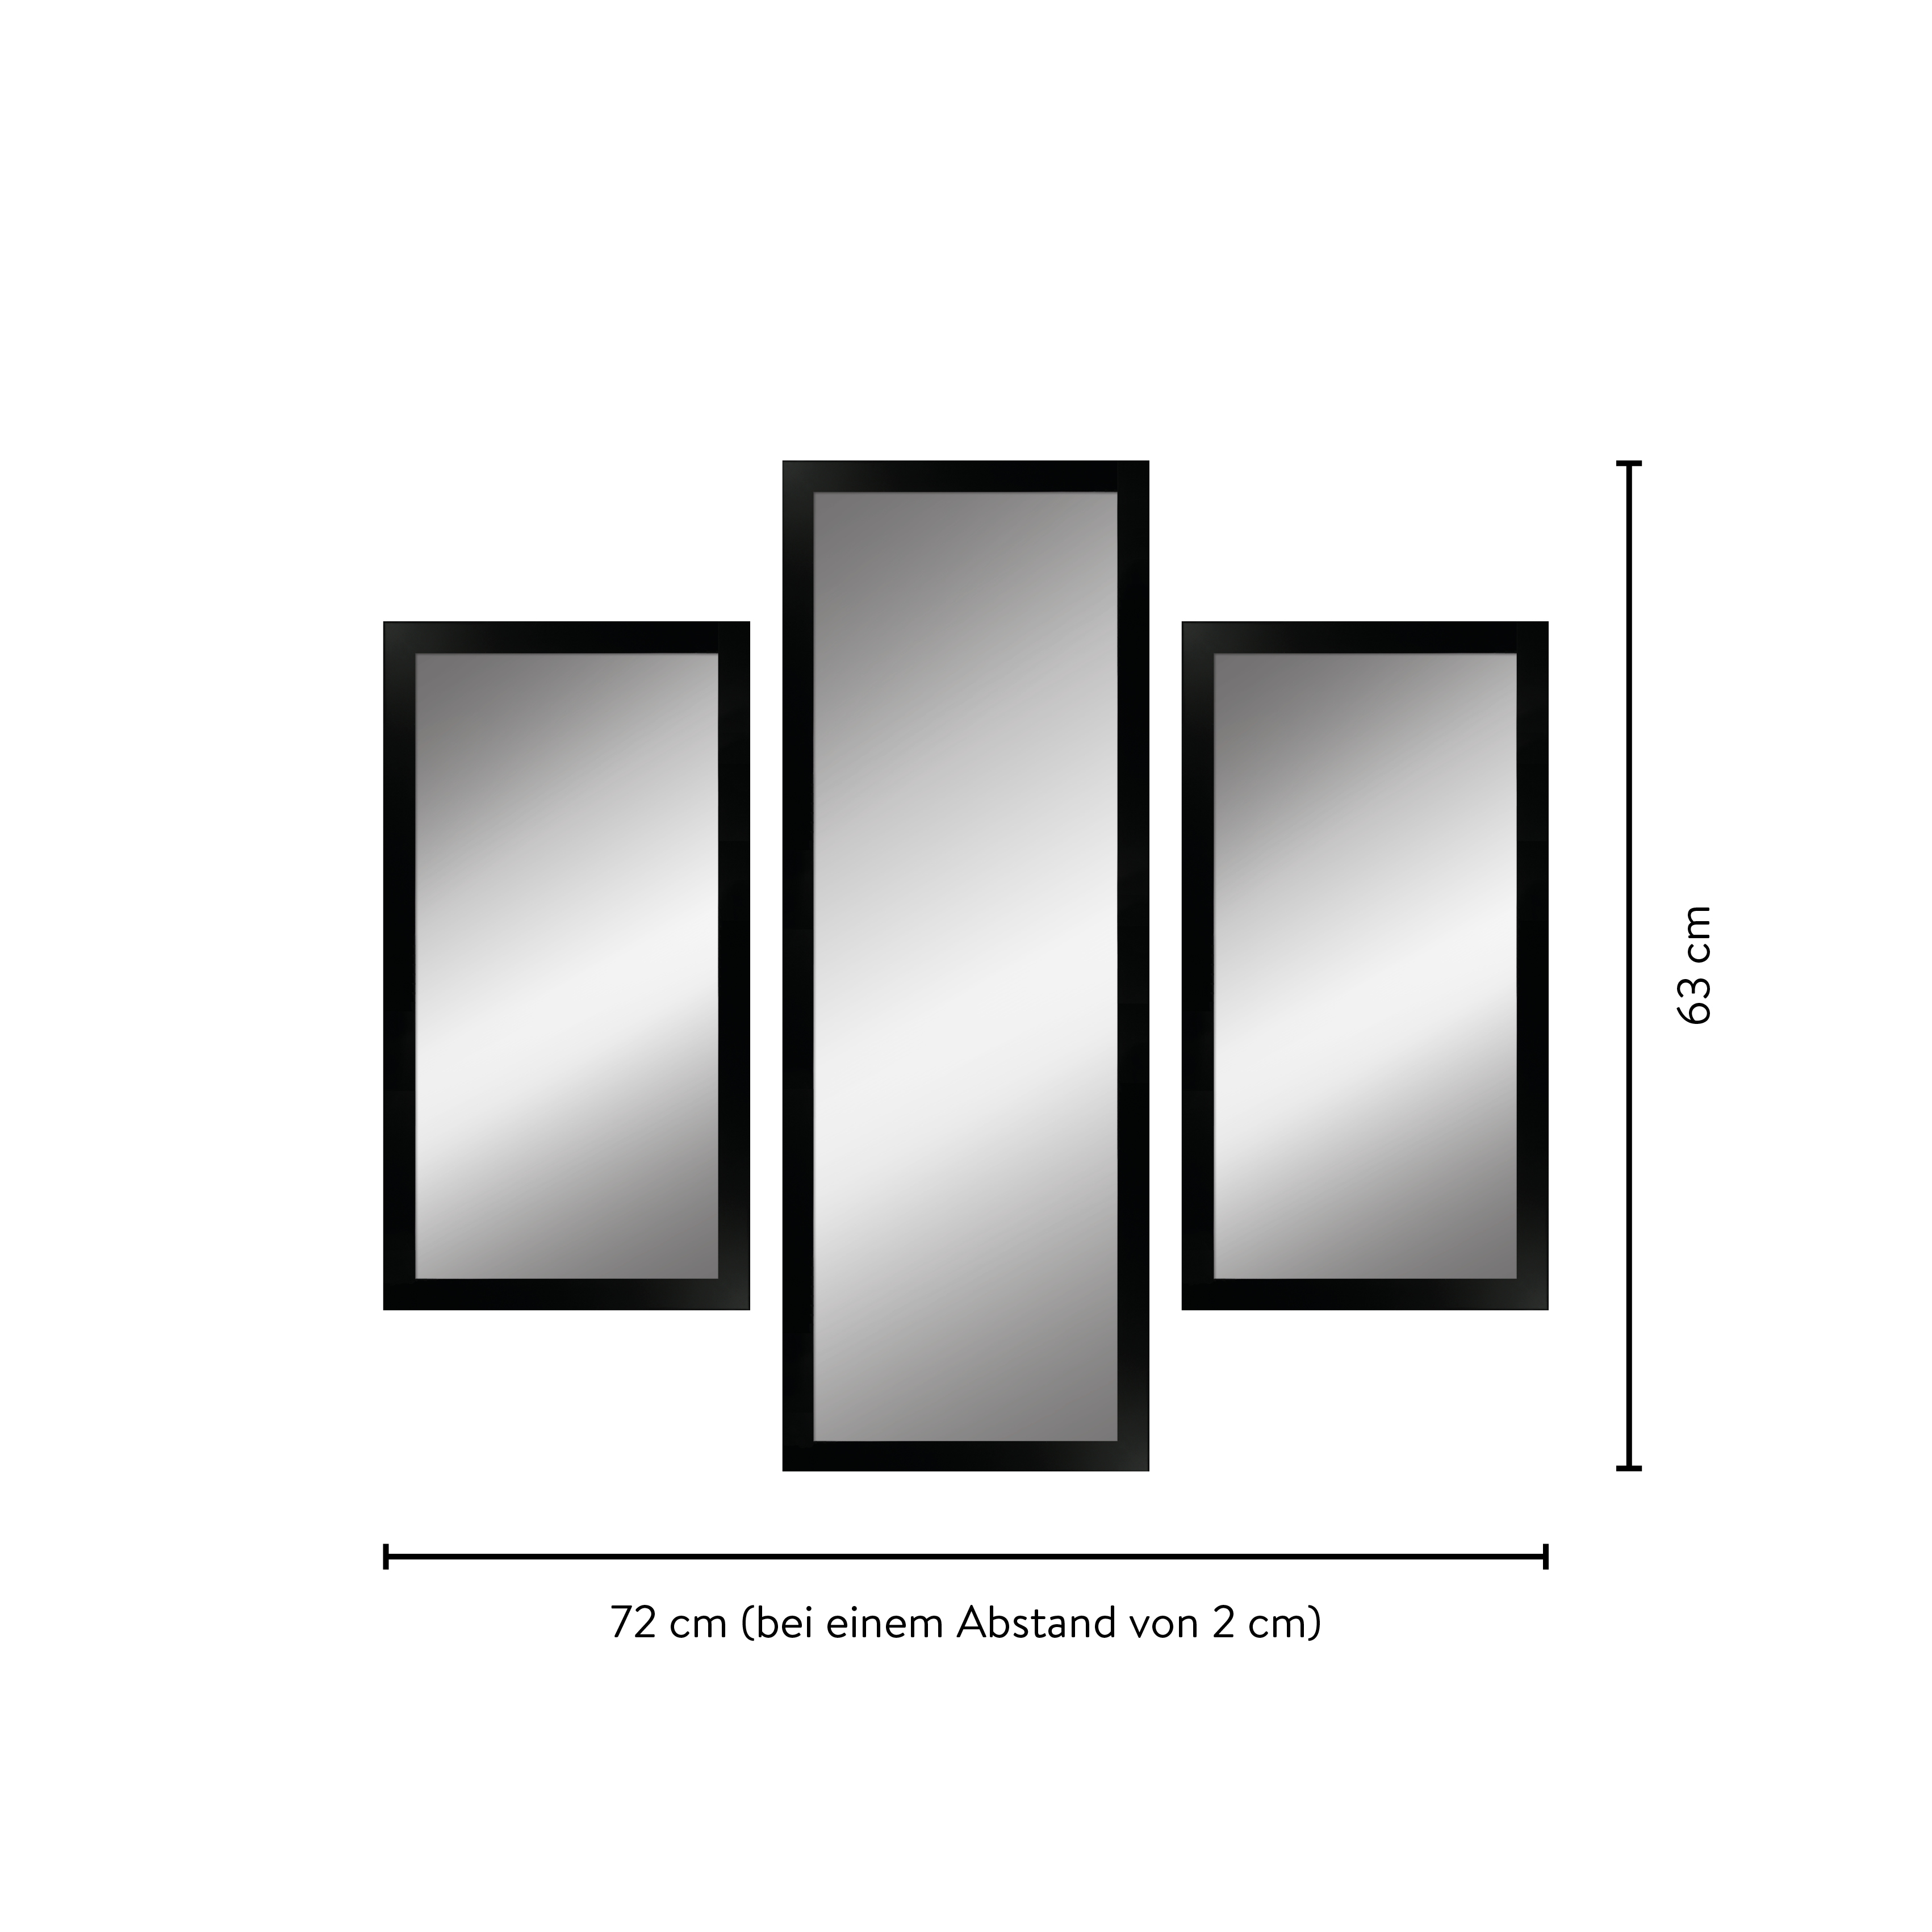 Maße eines Spiegelsets bestehend aus 3 edlen Spiegeln mit Holzrahmen